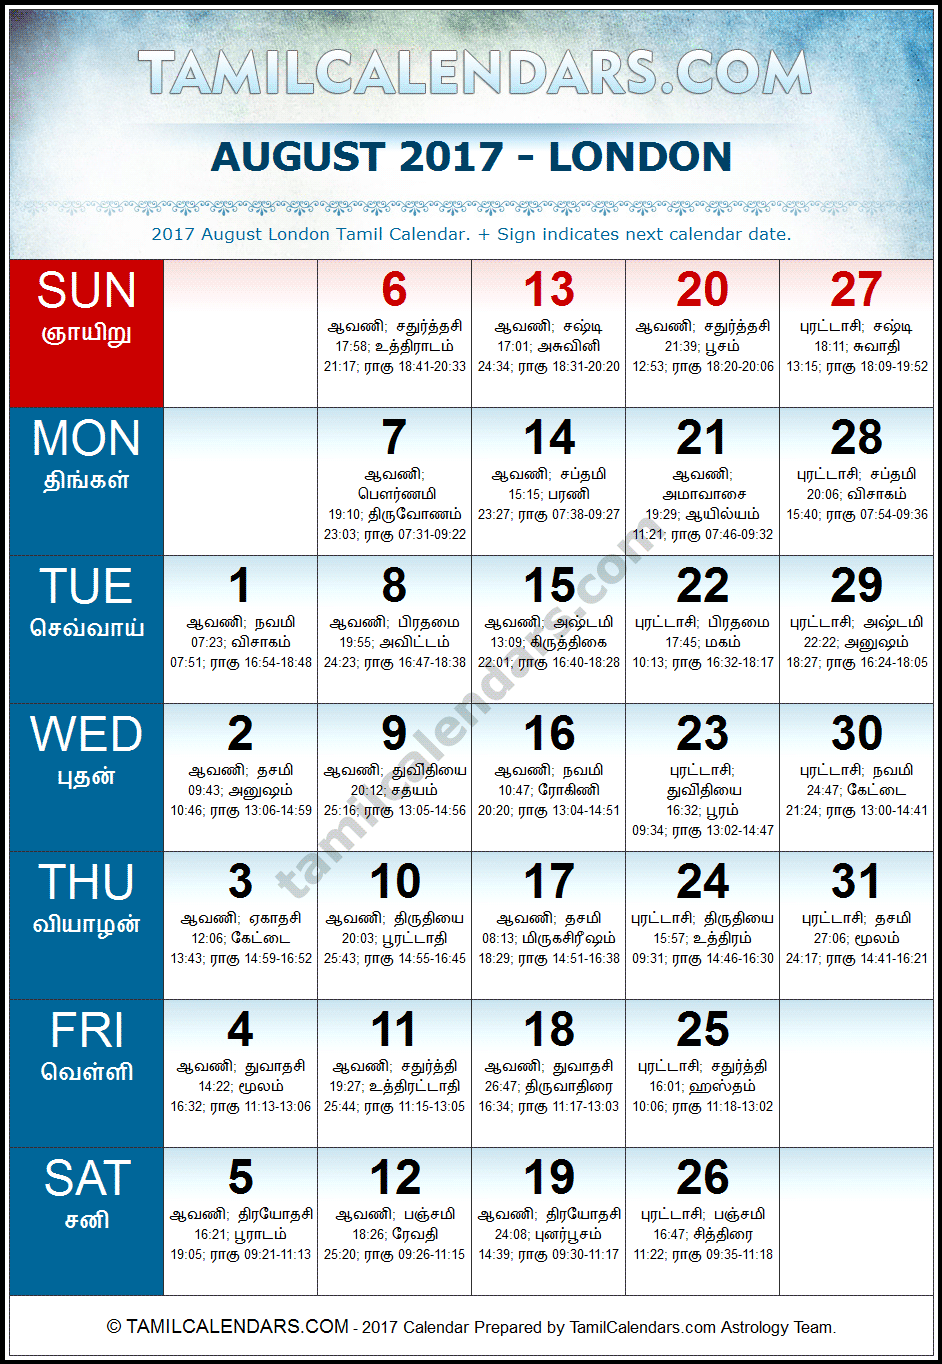 August 2017 Tamil Calendar for London, UK